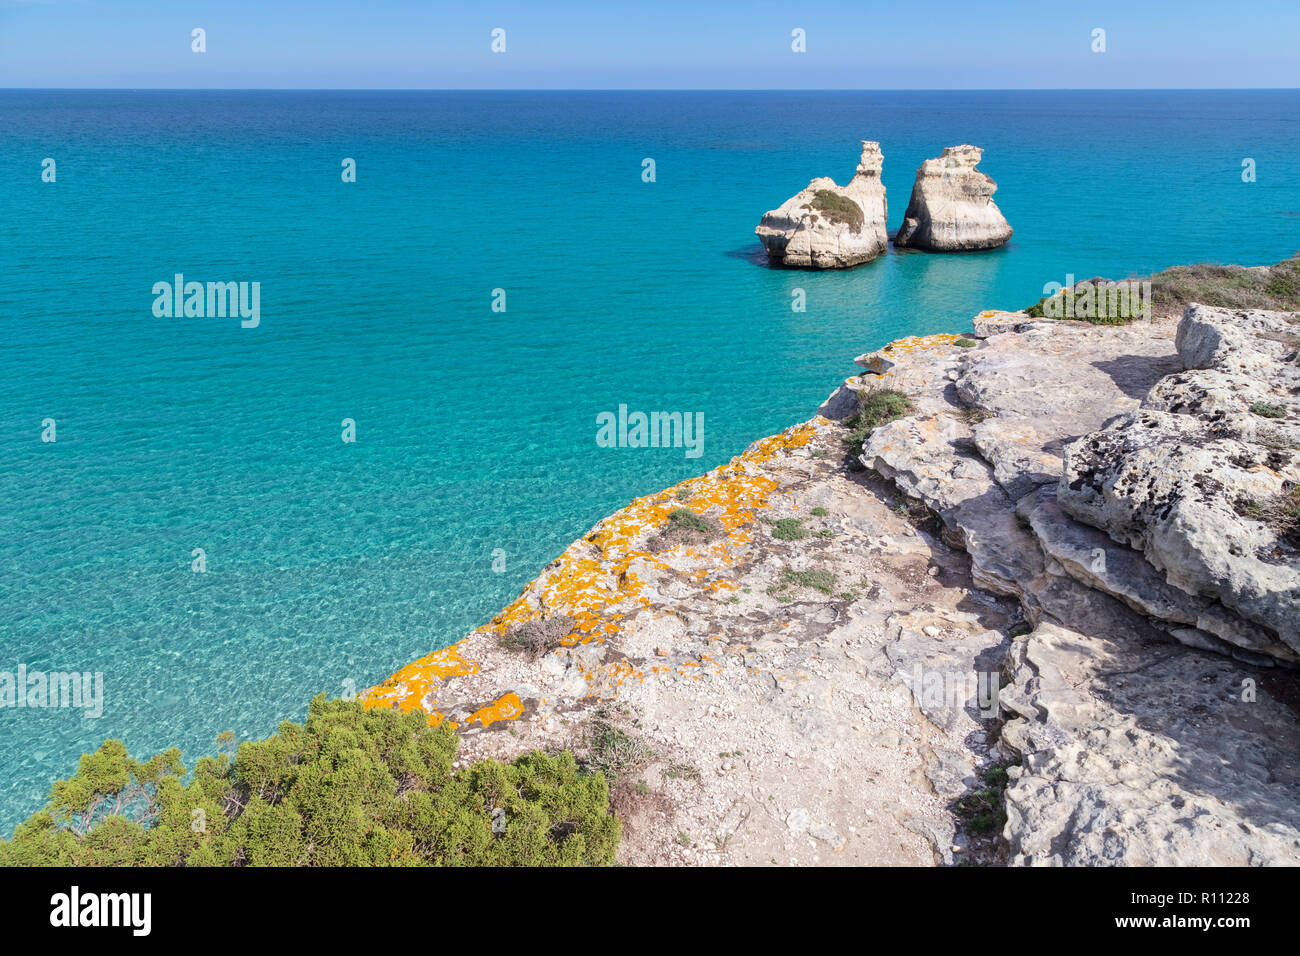 Las dos hermanas pilas en frente de la costa de Torre dell'Orso. Melendugno, provincia de Lecce, Salento, Puglia, Italia. Foto de stock